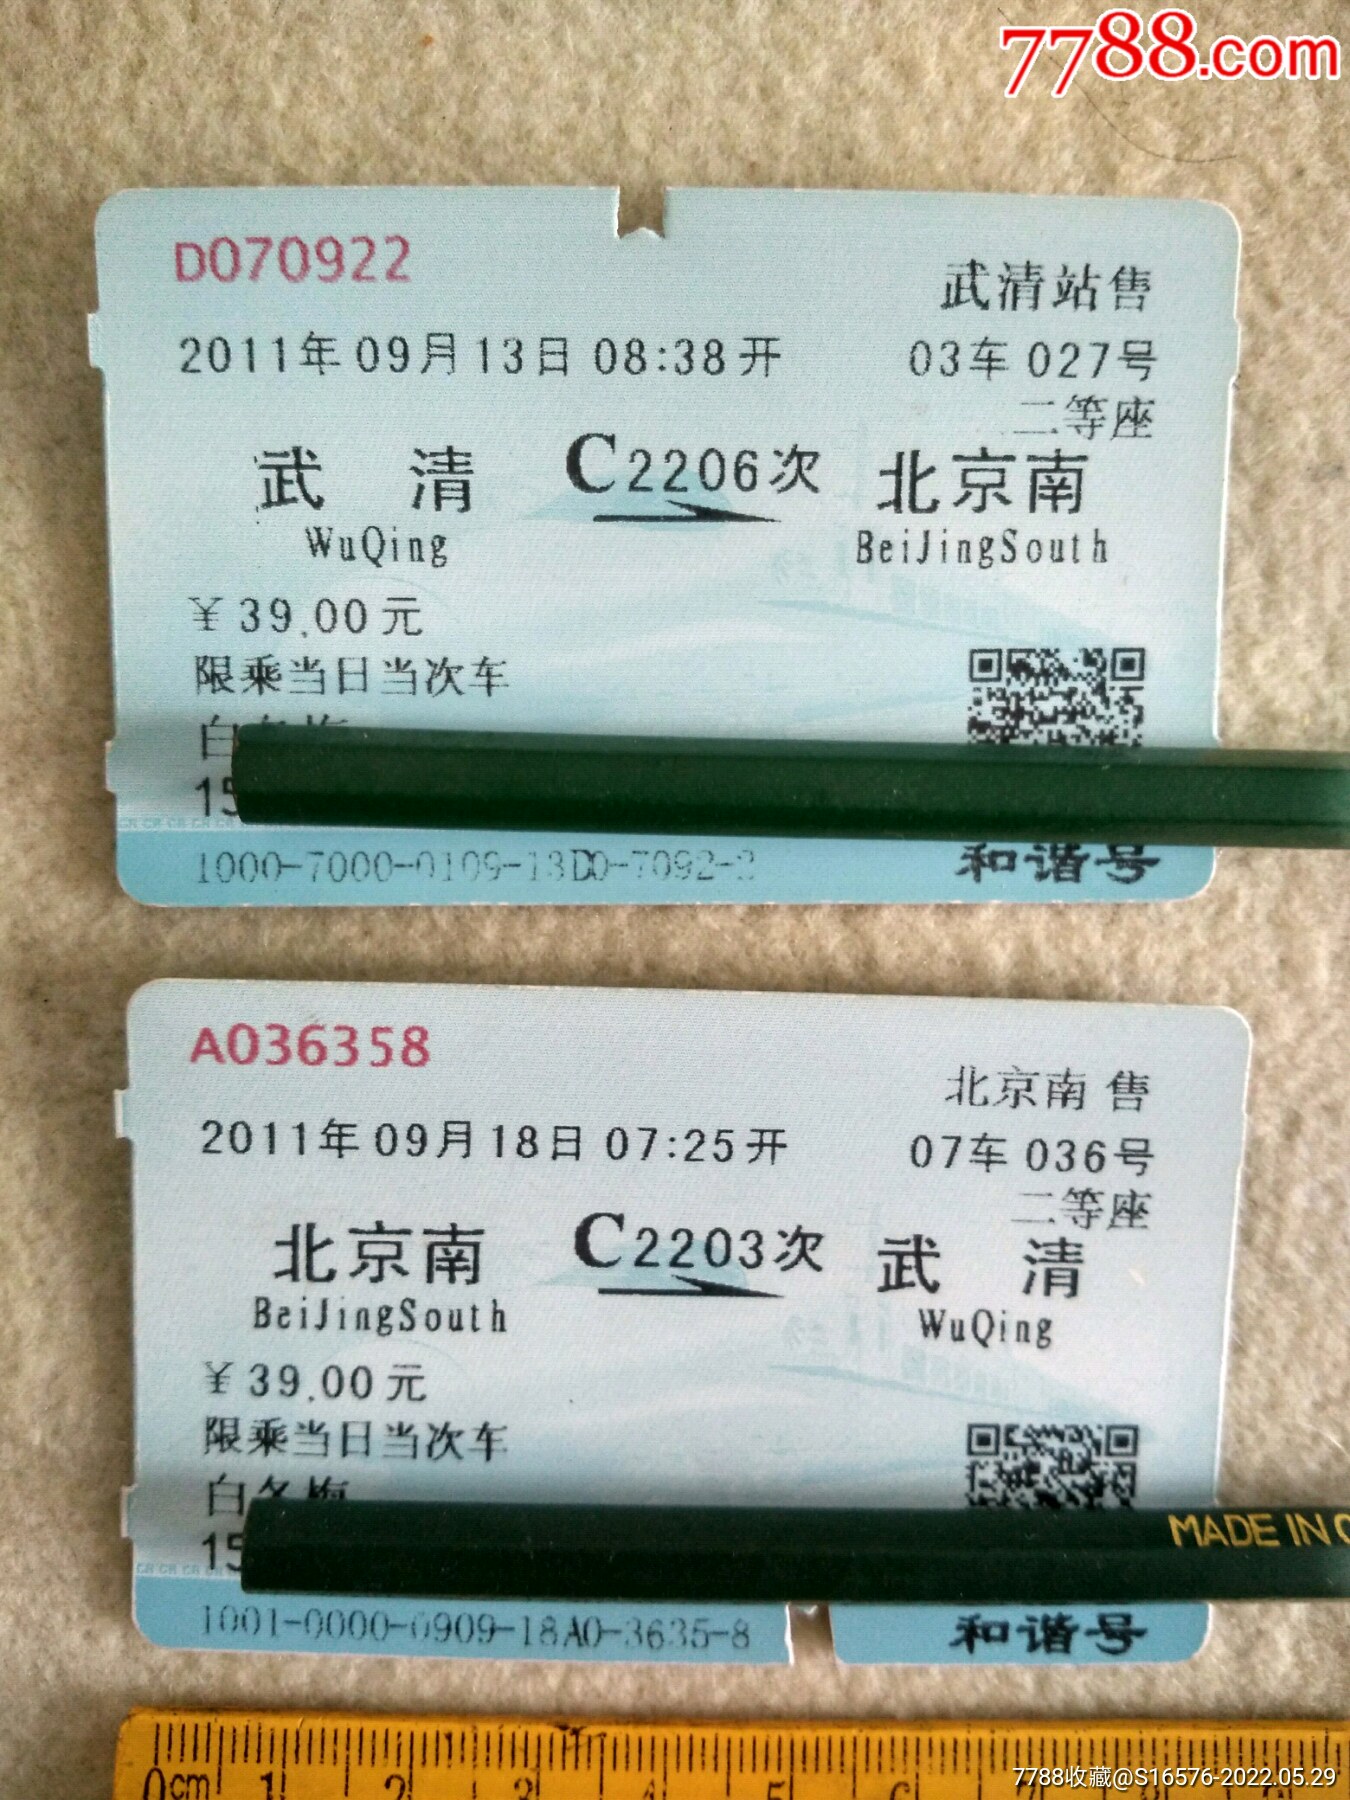 同一人天津到北京往返火车票一套，4419次4420次-价格:5元-se87370569-火车票-零售-7788收藏__收藏热线